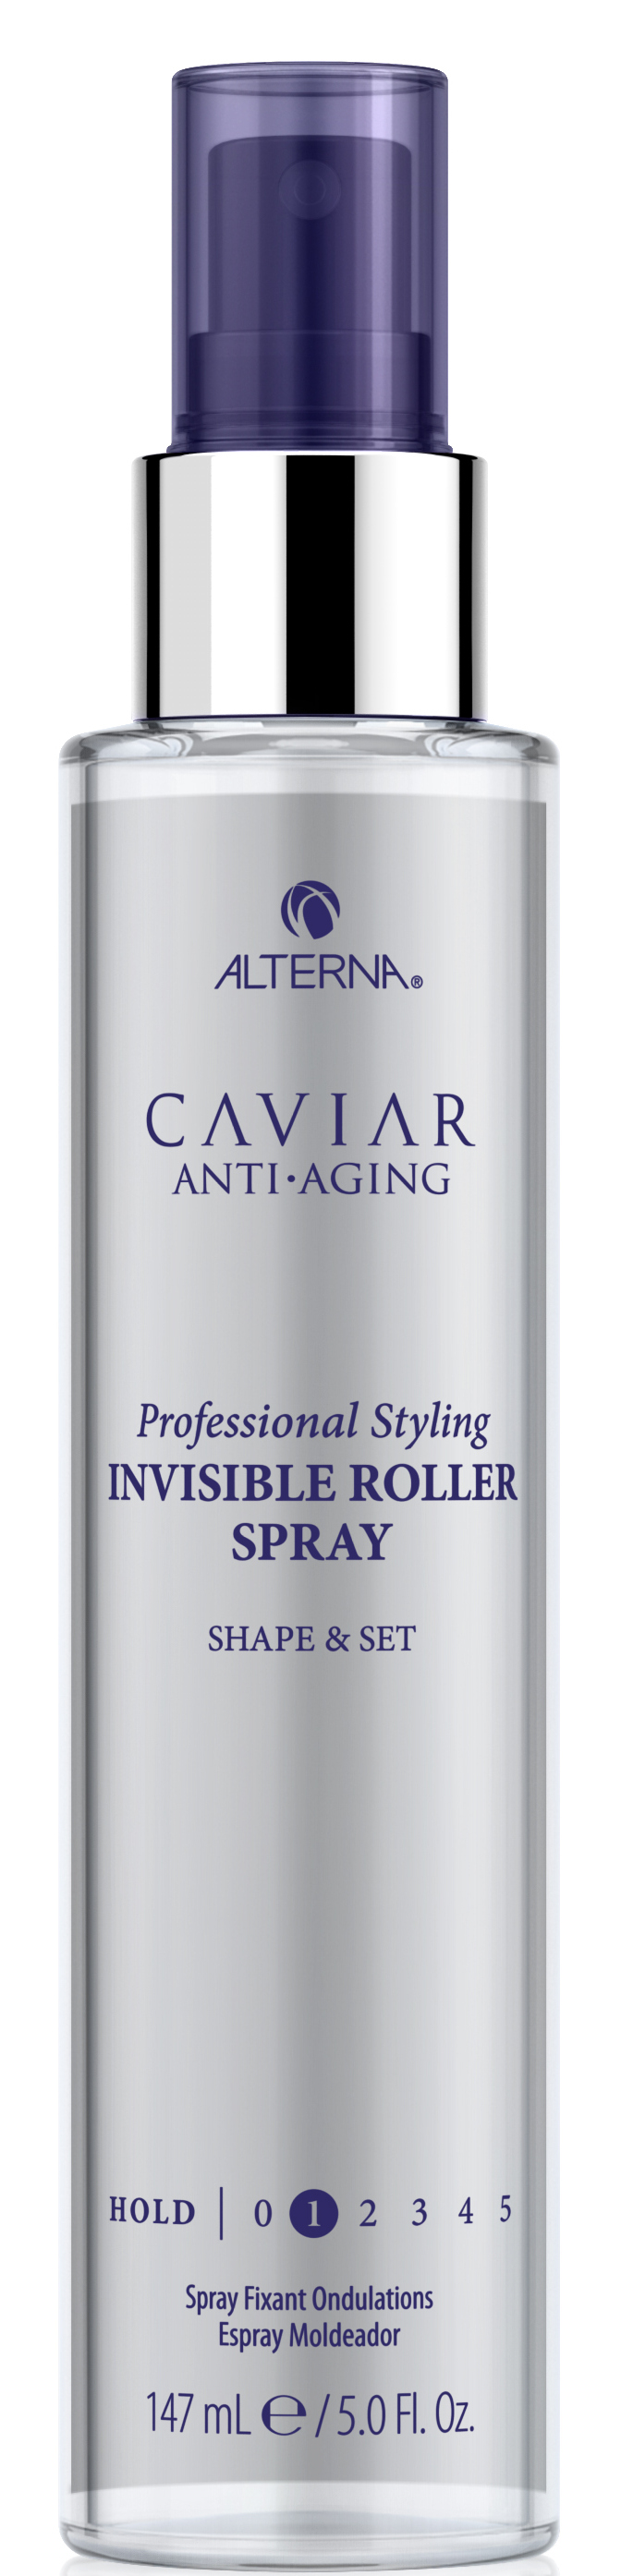 Купить ALTERNA Спрей для создания локонов, с антивозрастным уходом / Caviar Anti-Aging Professional Styling Invisible Roller Spray 147 мл